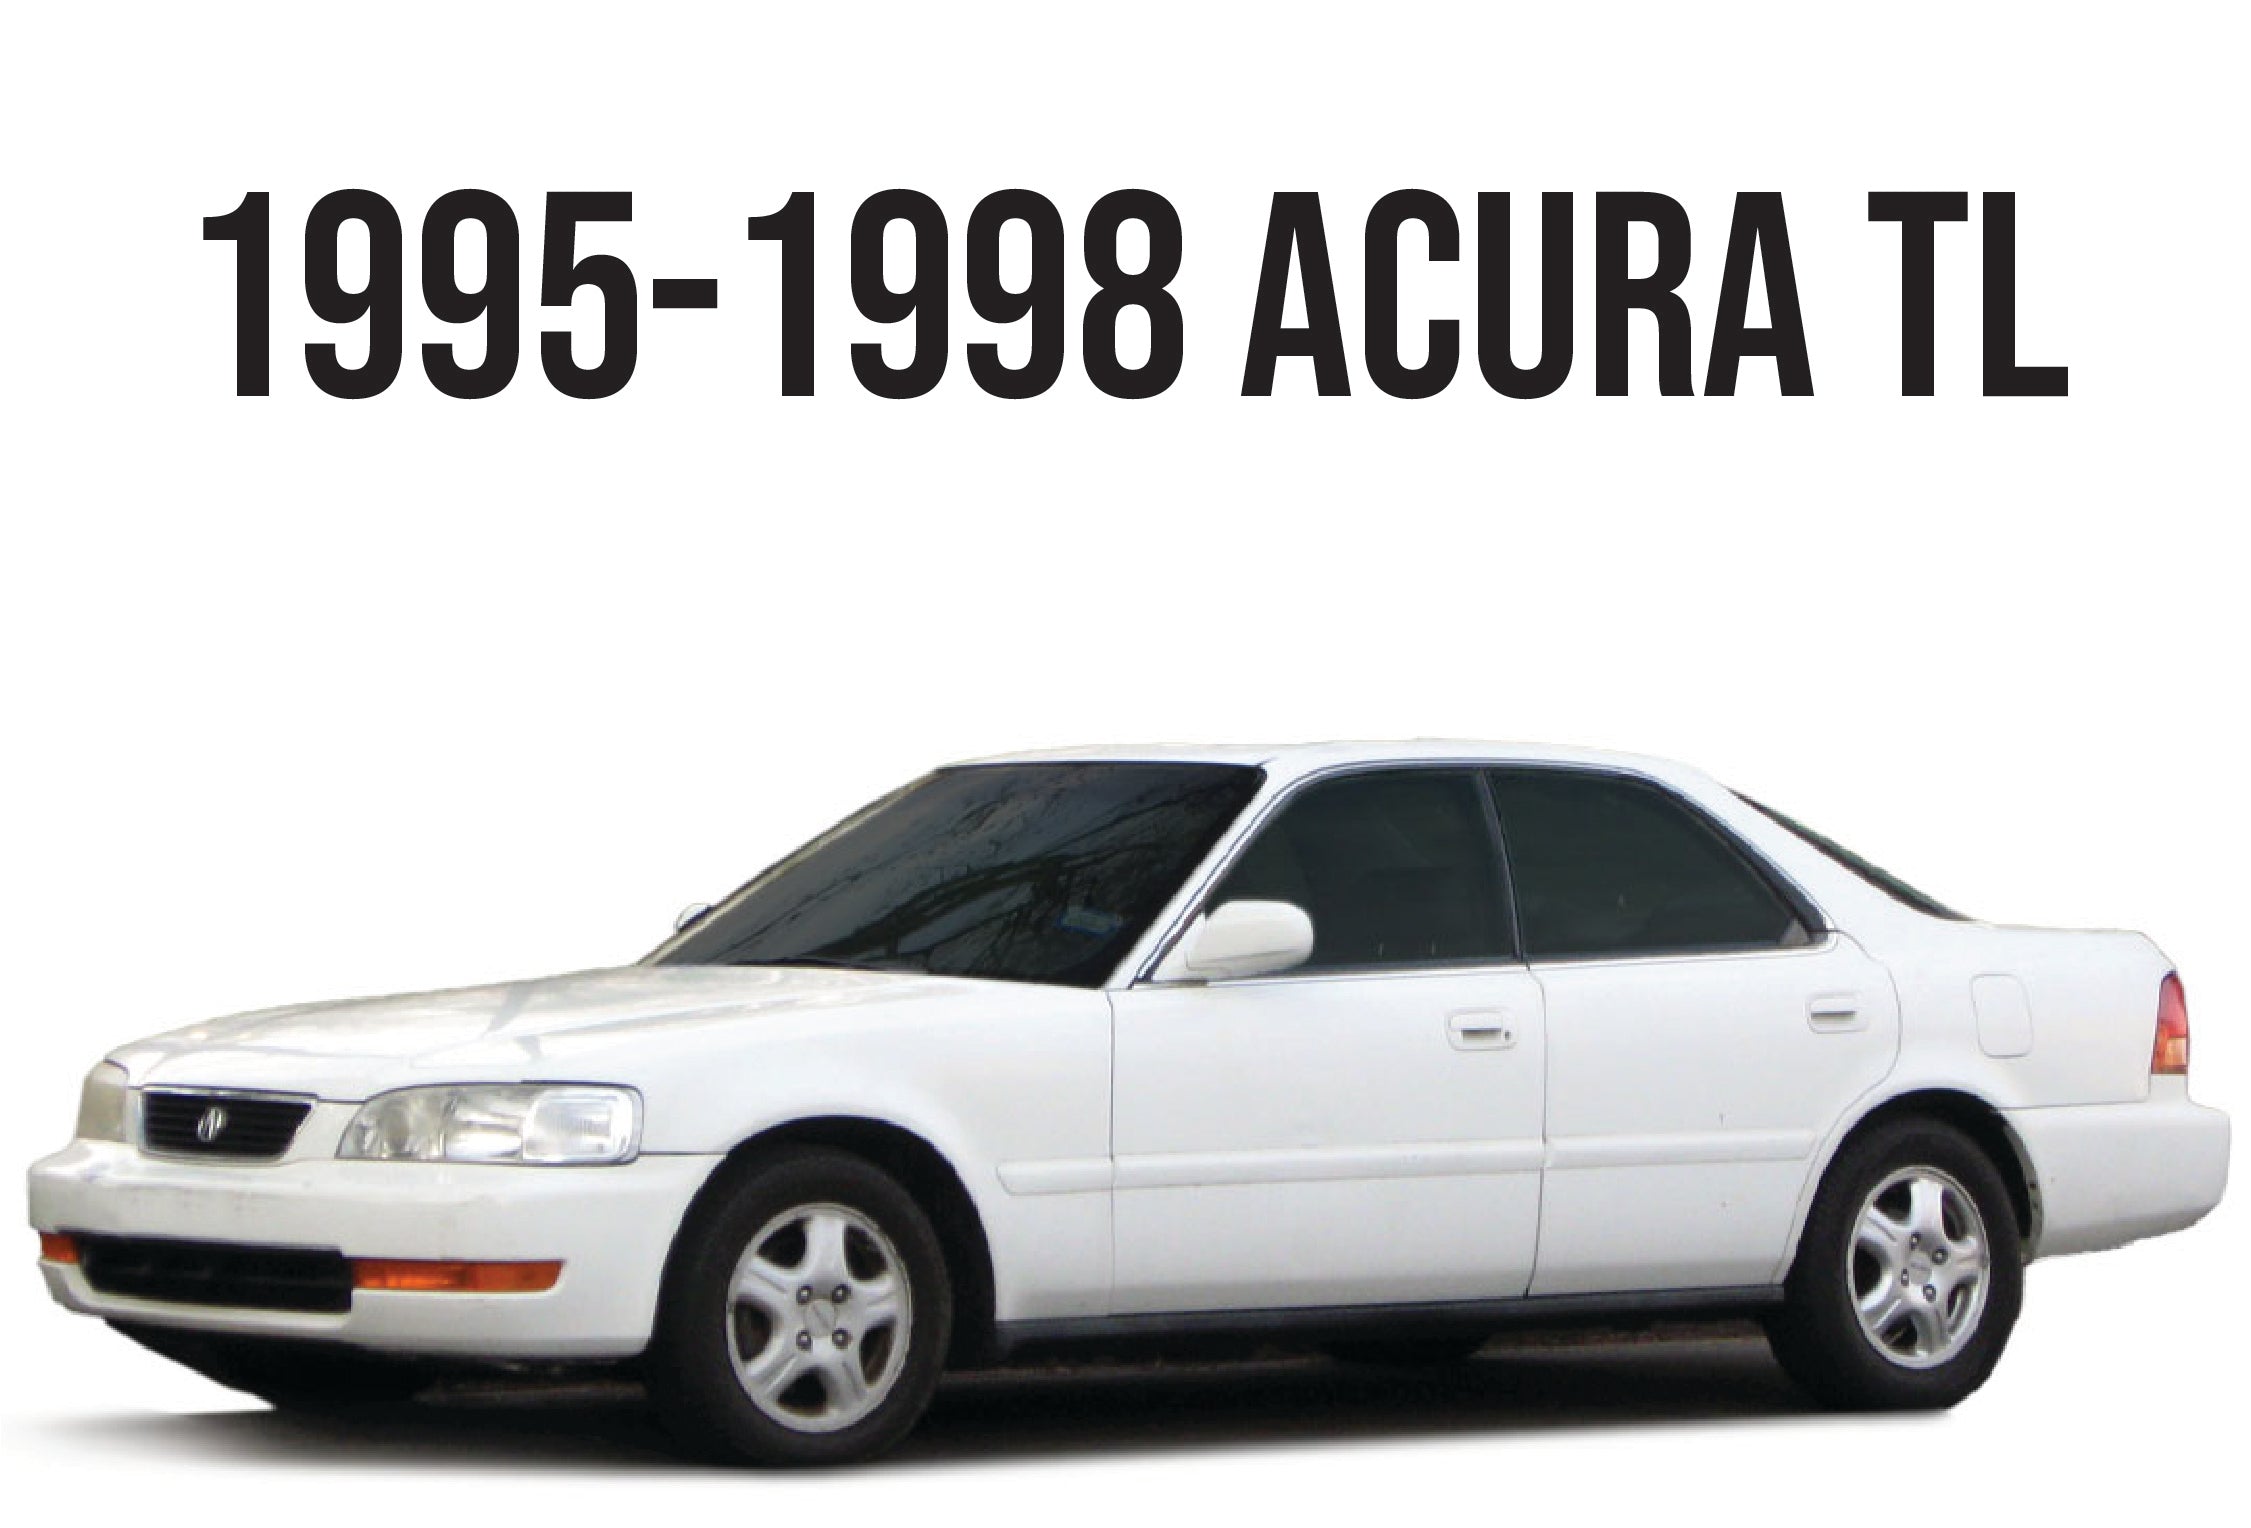 1995-1998 ACURA TL - Unique Style Racing